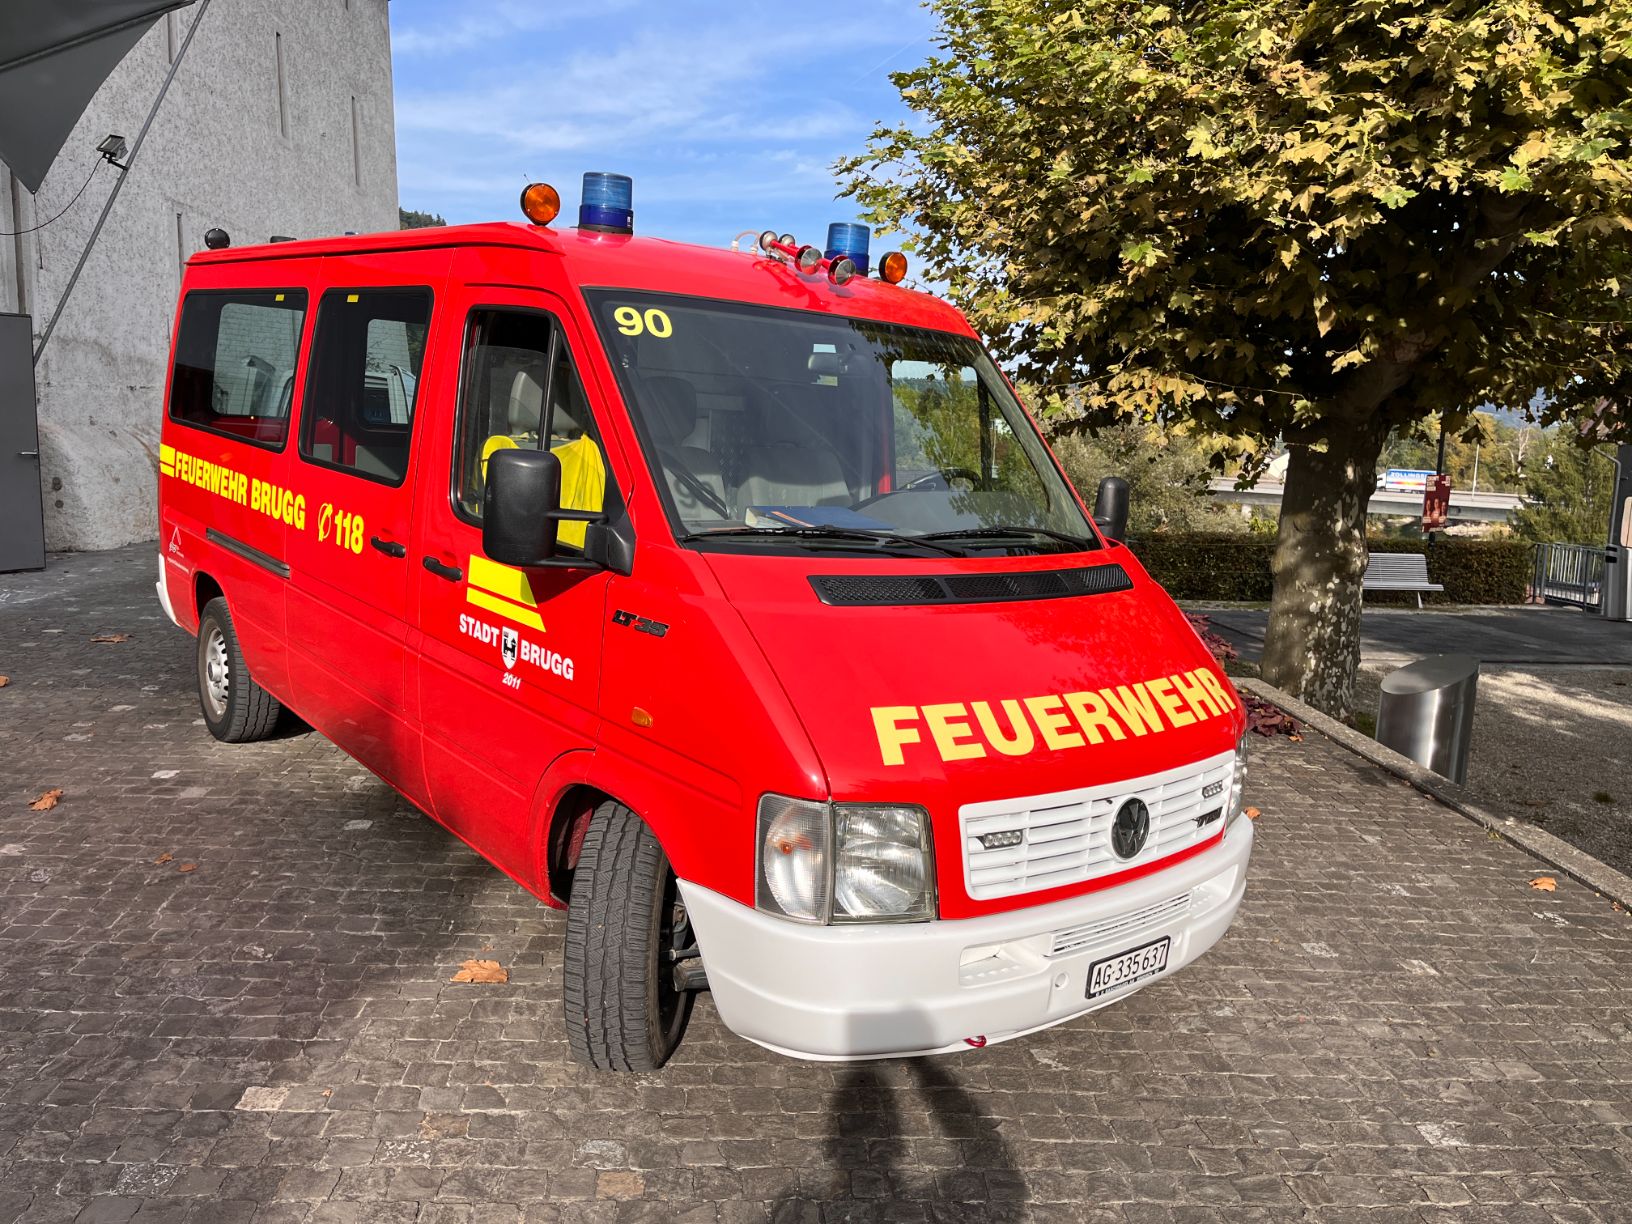 Auftritt im Salzhaus Brugg, anlässlich Vereidigung der 43 neuen Feuerwehroffiziere vom Kanton Aargau